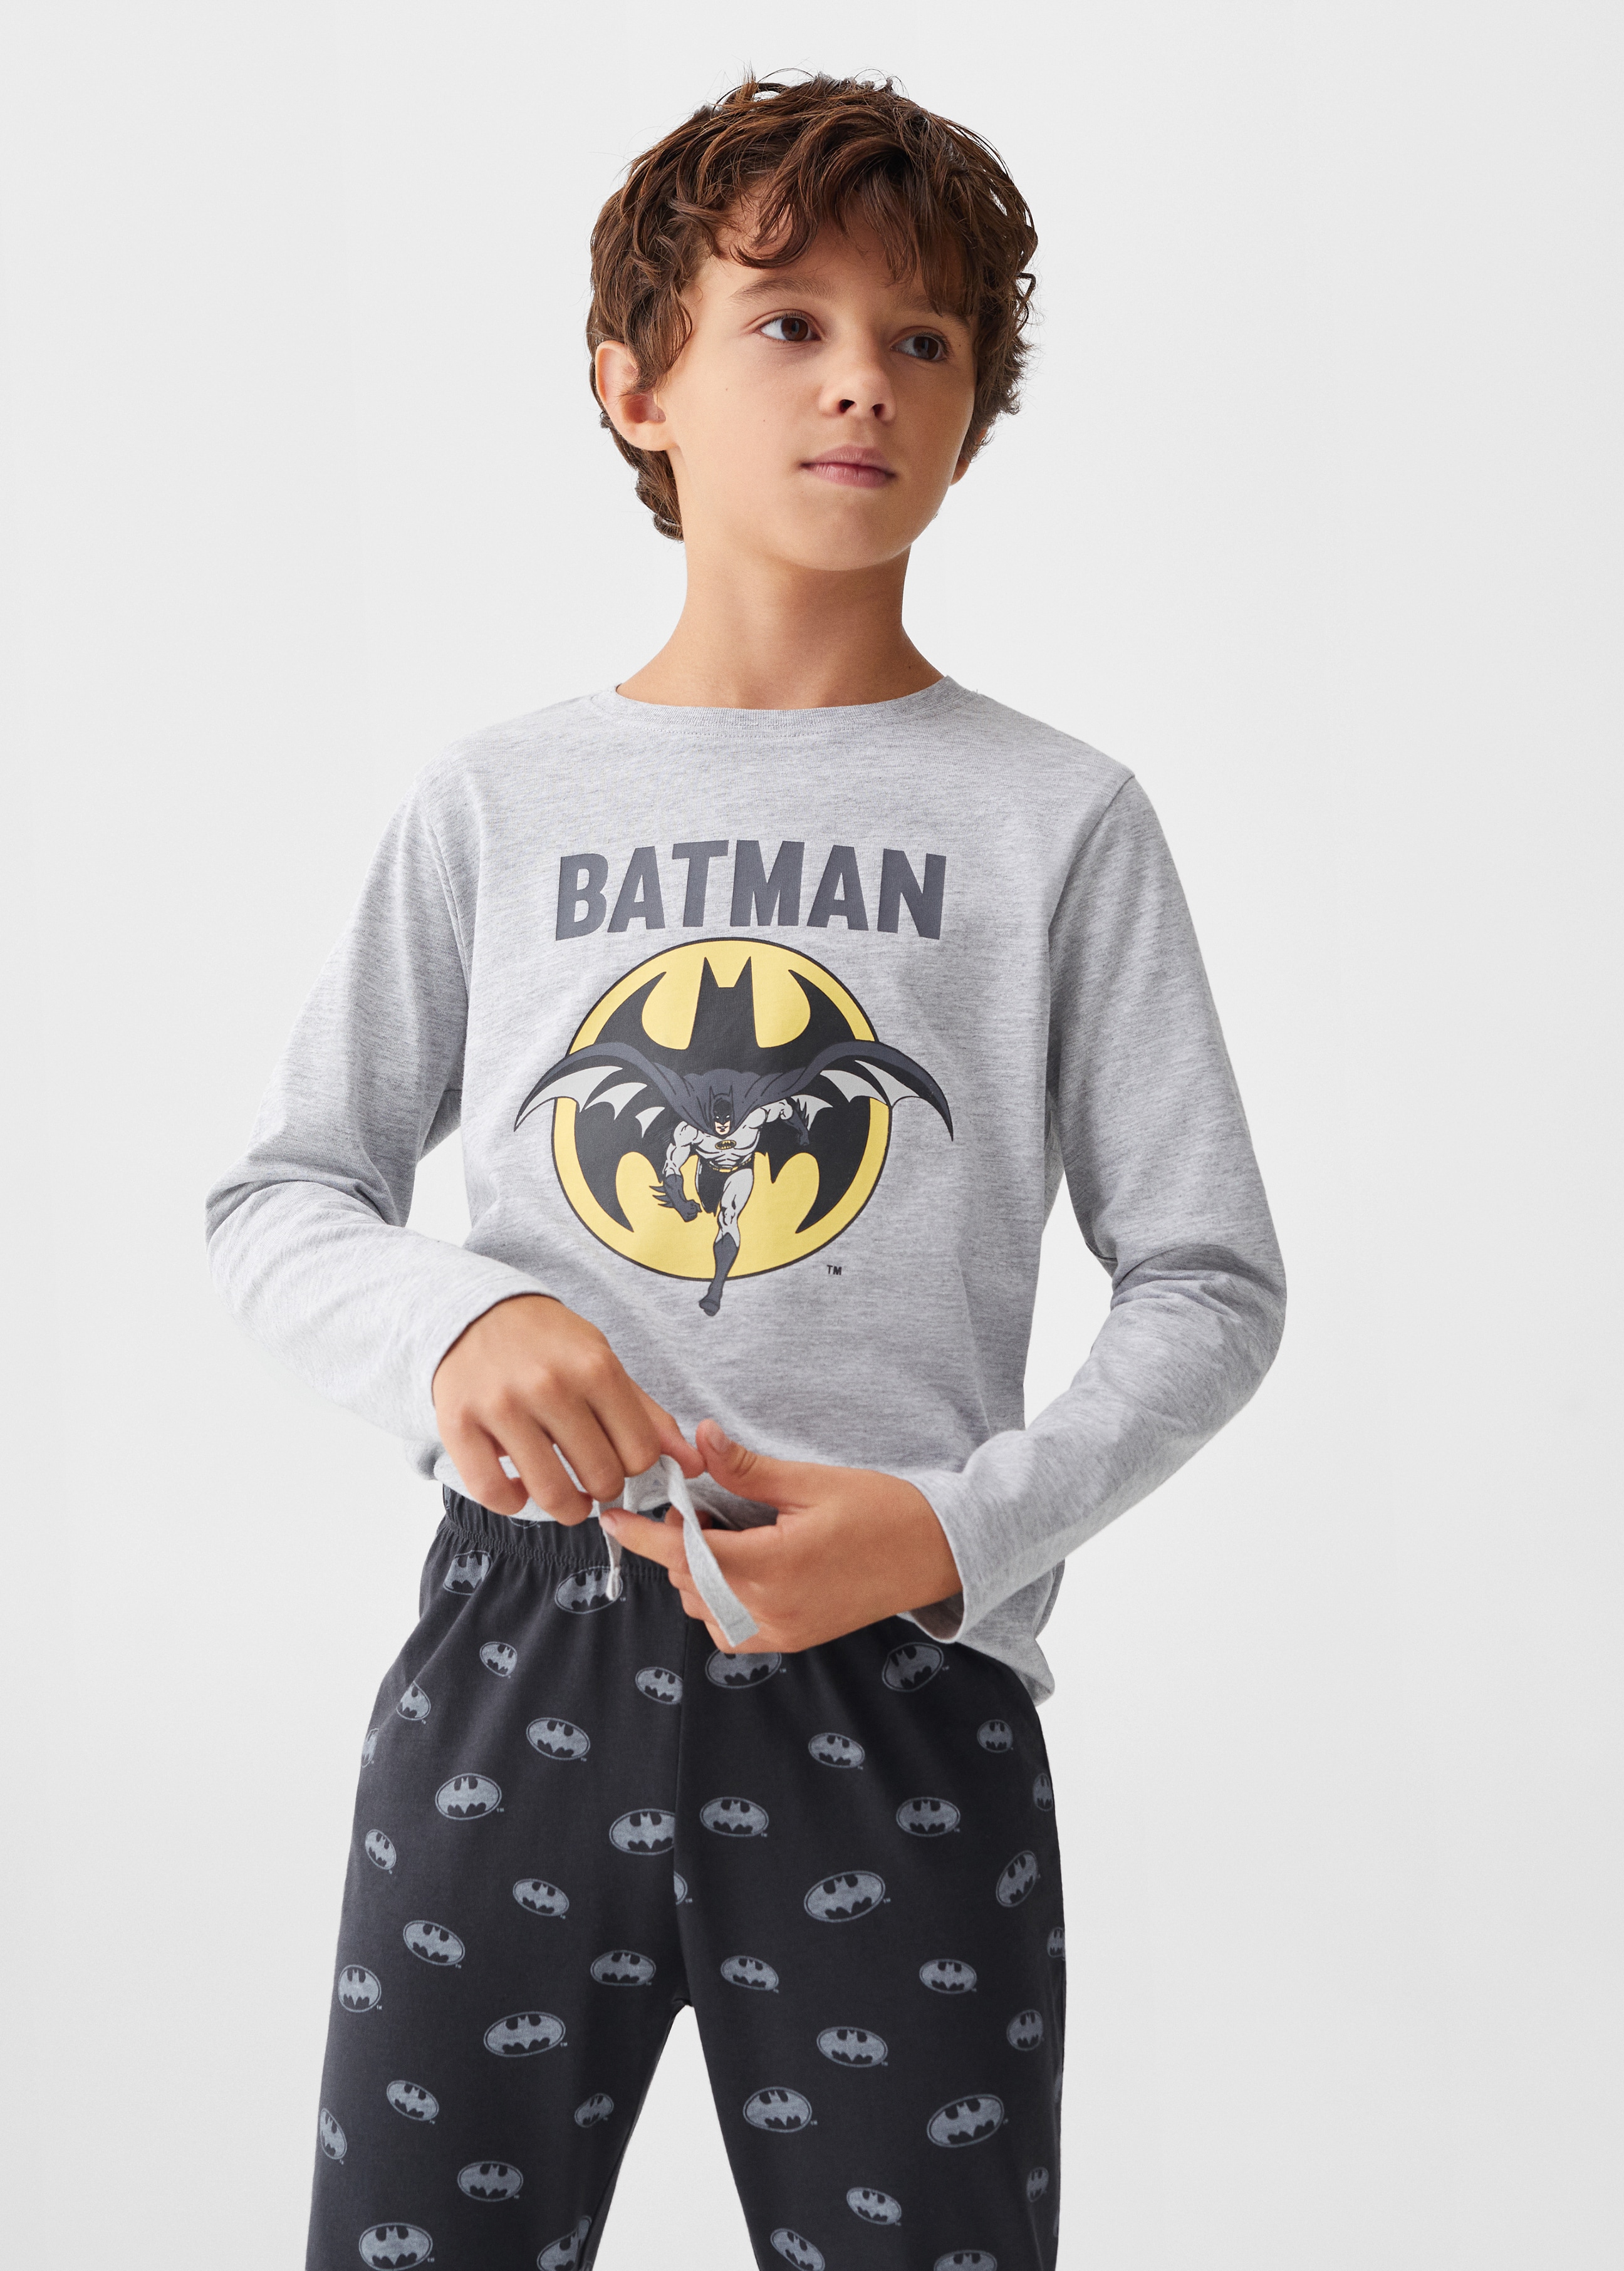 Long Batman pyjamas - Medium plane